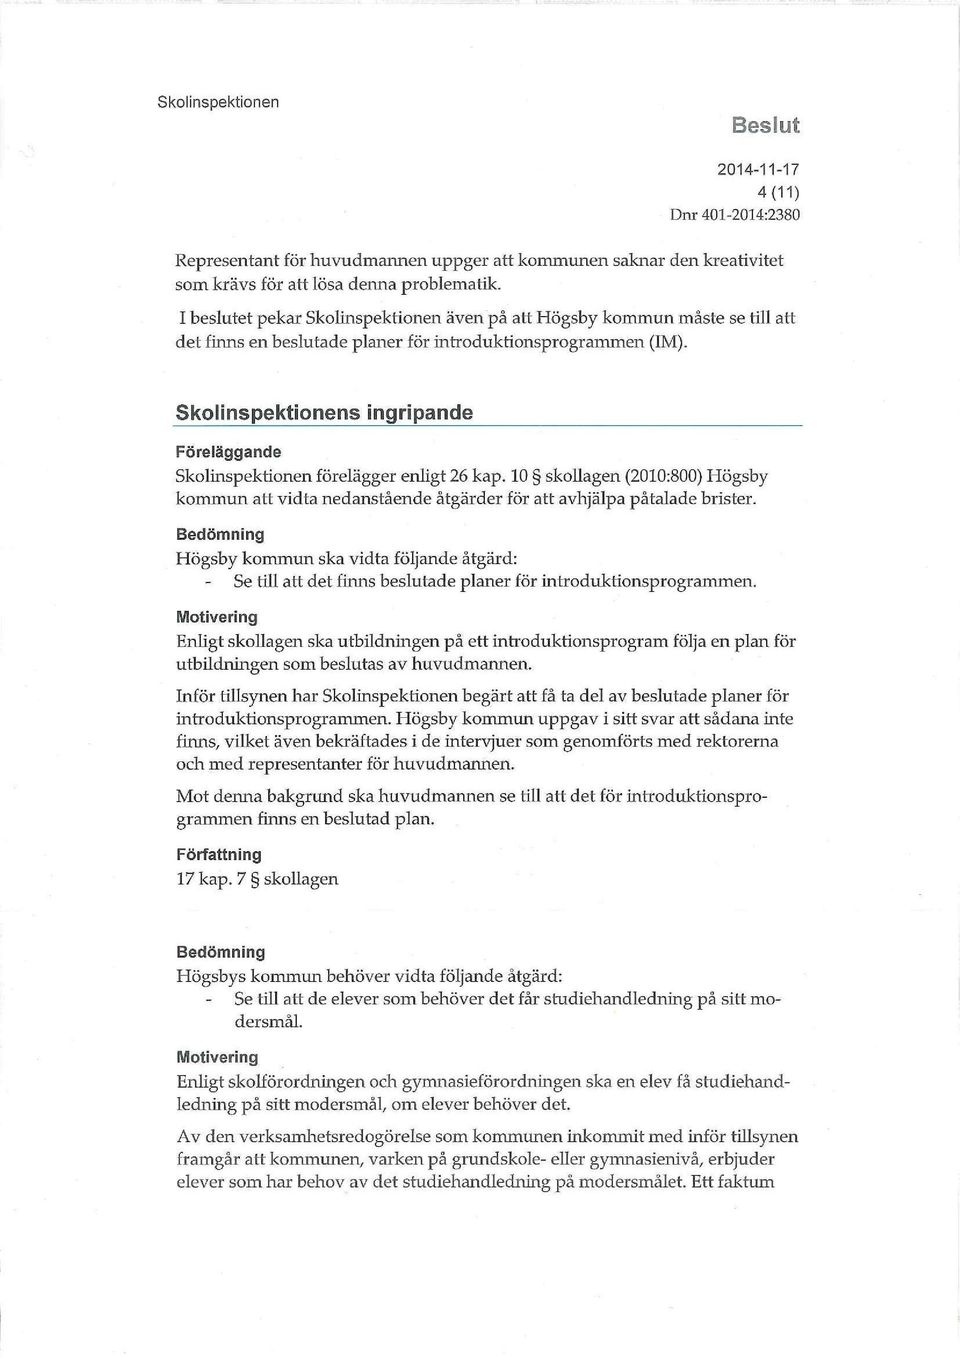 Skolinspektionens ingripande Föreläggande Skolinspektionen förelägger enligt 26 kap. 10 skollagen (2010:800) Högsby kommun att vidta nedanstående åtgärder för att avhjälpa påtalade brister.